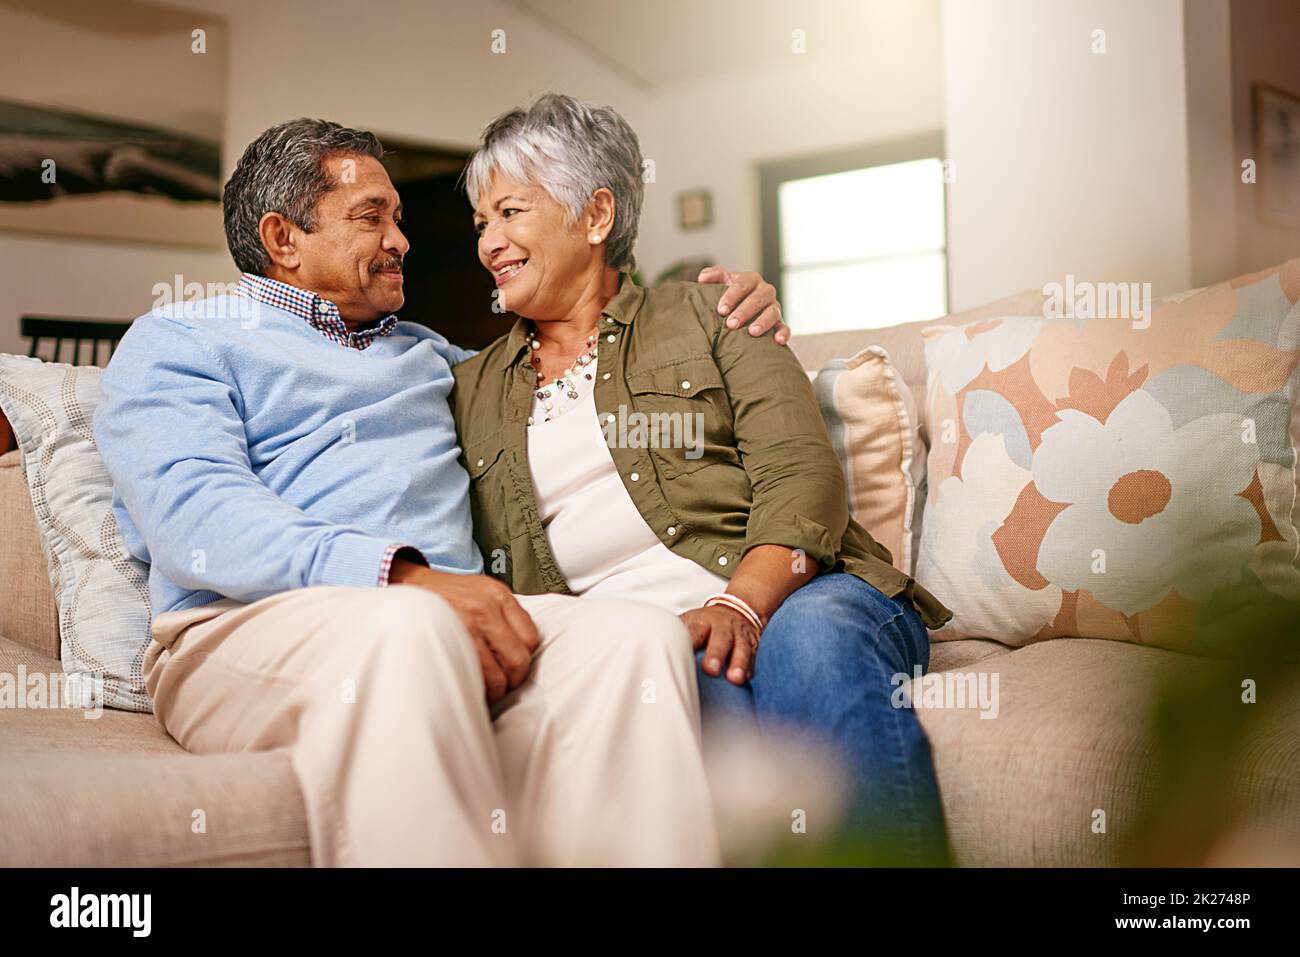 Ich war glücklich, dass ich danach im Ruhestand war. Aufnahme eines glücklichen älteren Paares, das sich zu Hause auf dem Sofa entspannt. Stockfoto